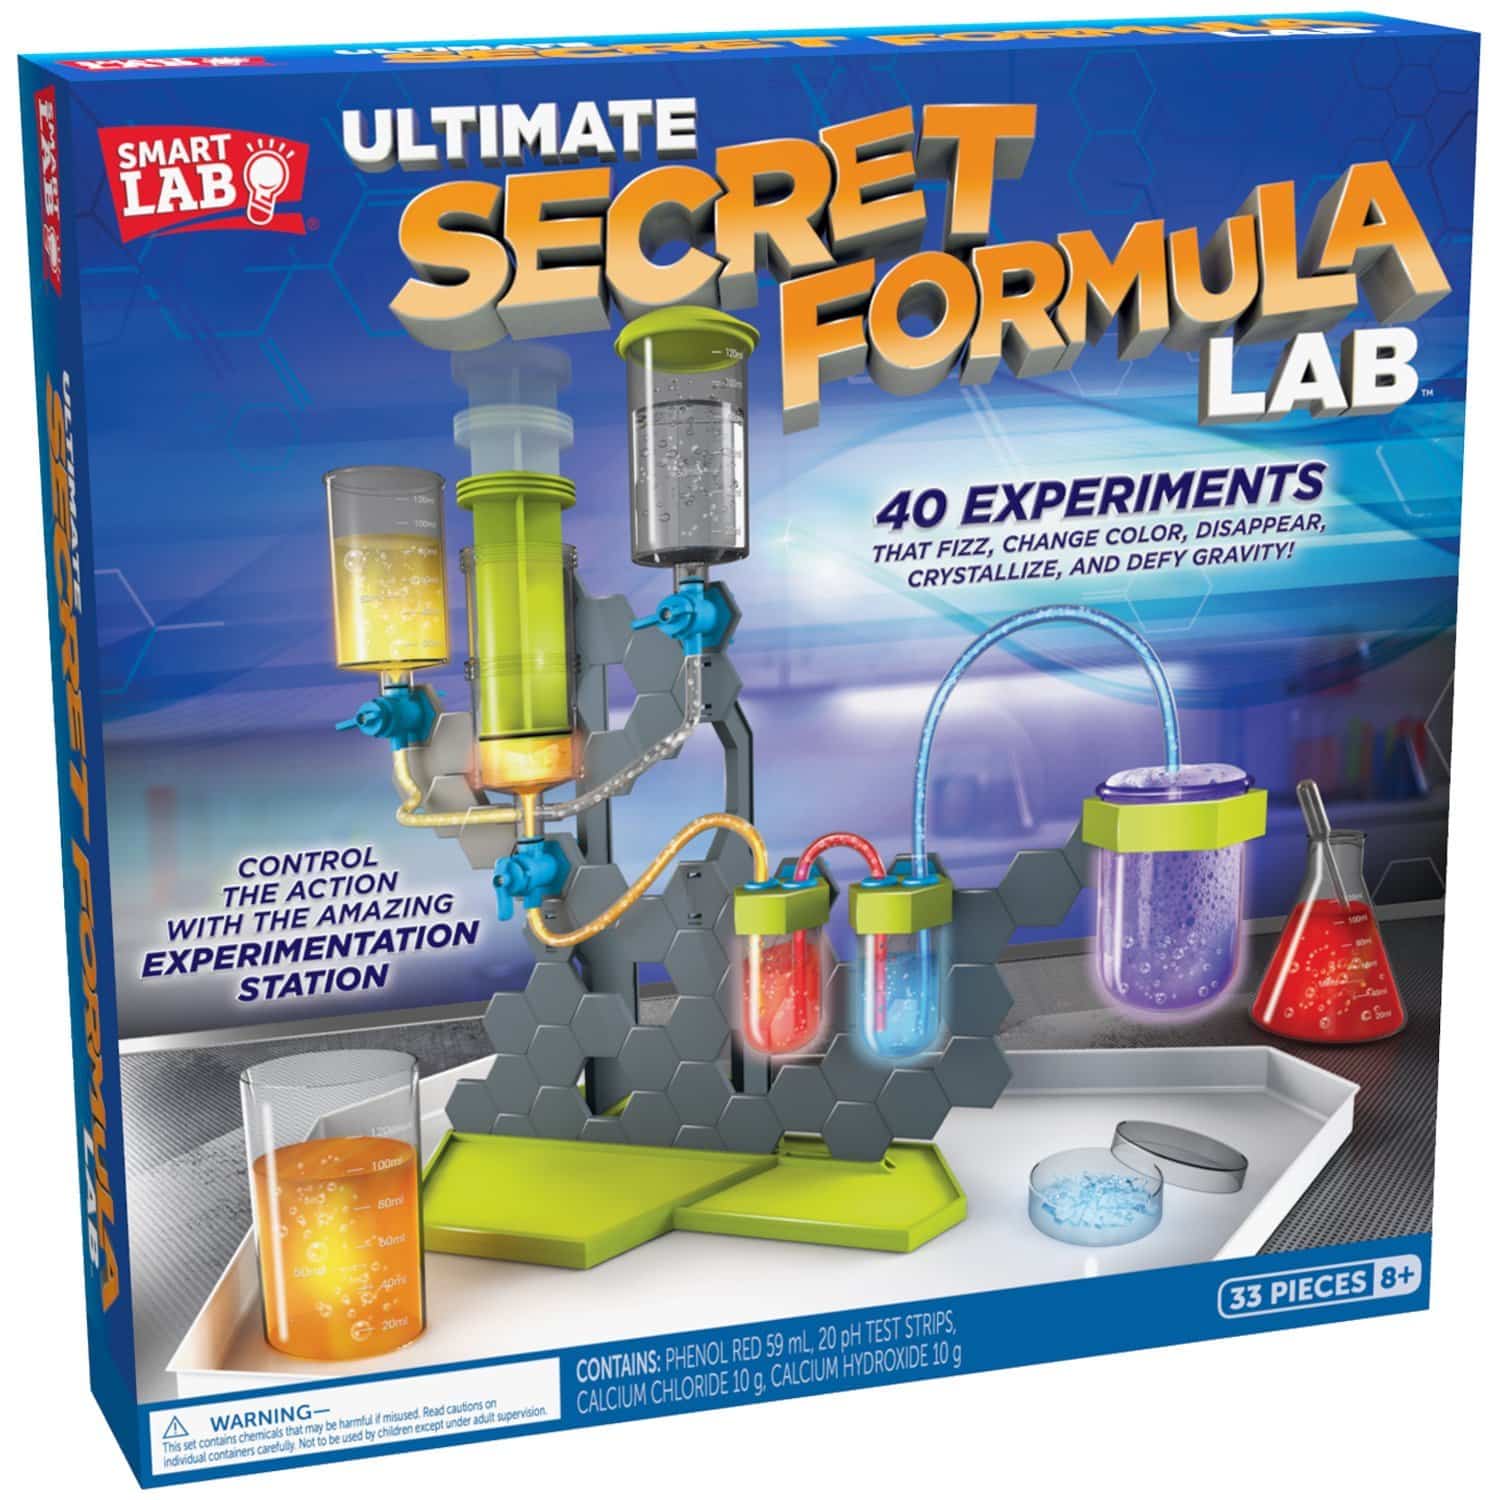 LIGHTNING DEAL ALERT! SmartLab Toys Ultimate Secret Formula Lab 55% off